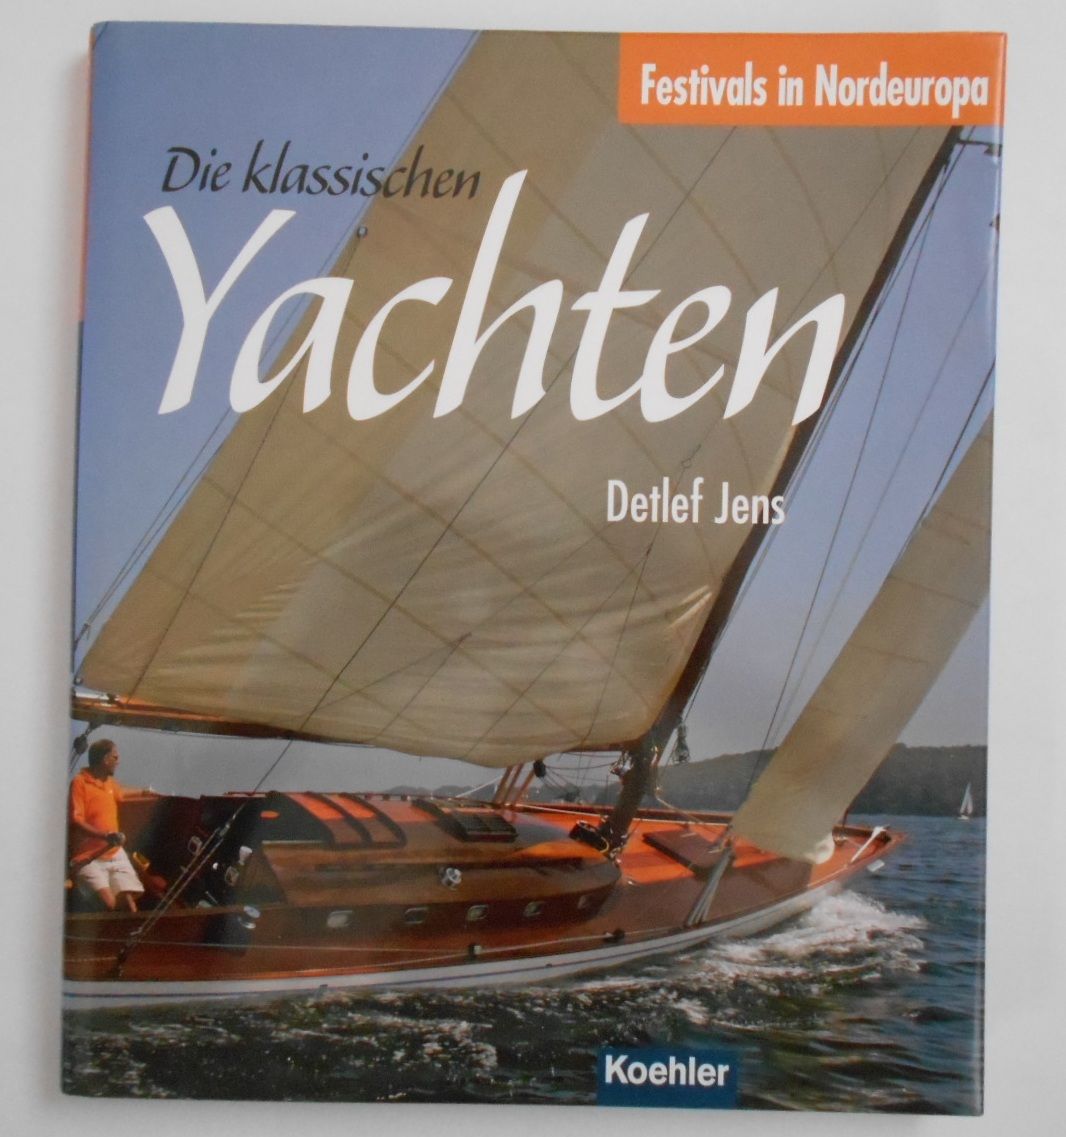 Die klassischen Yachten: Festivals in Nordeuropa